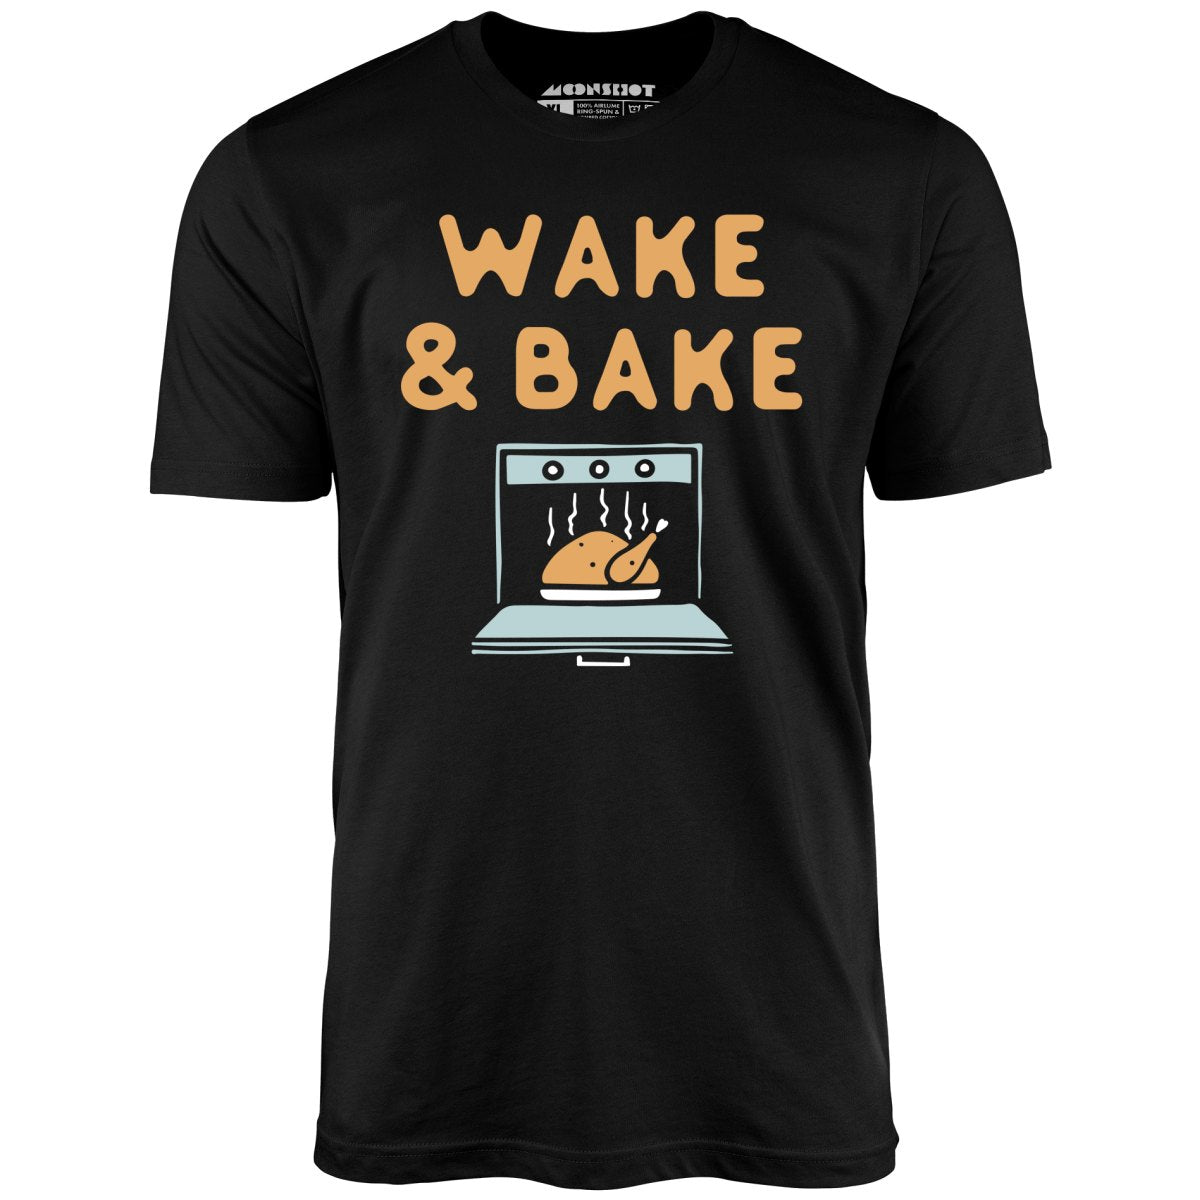 Wake & Bake - Unisex T-Shirt